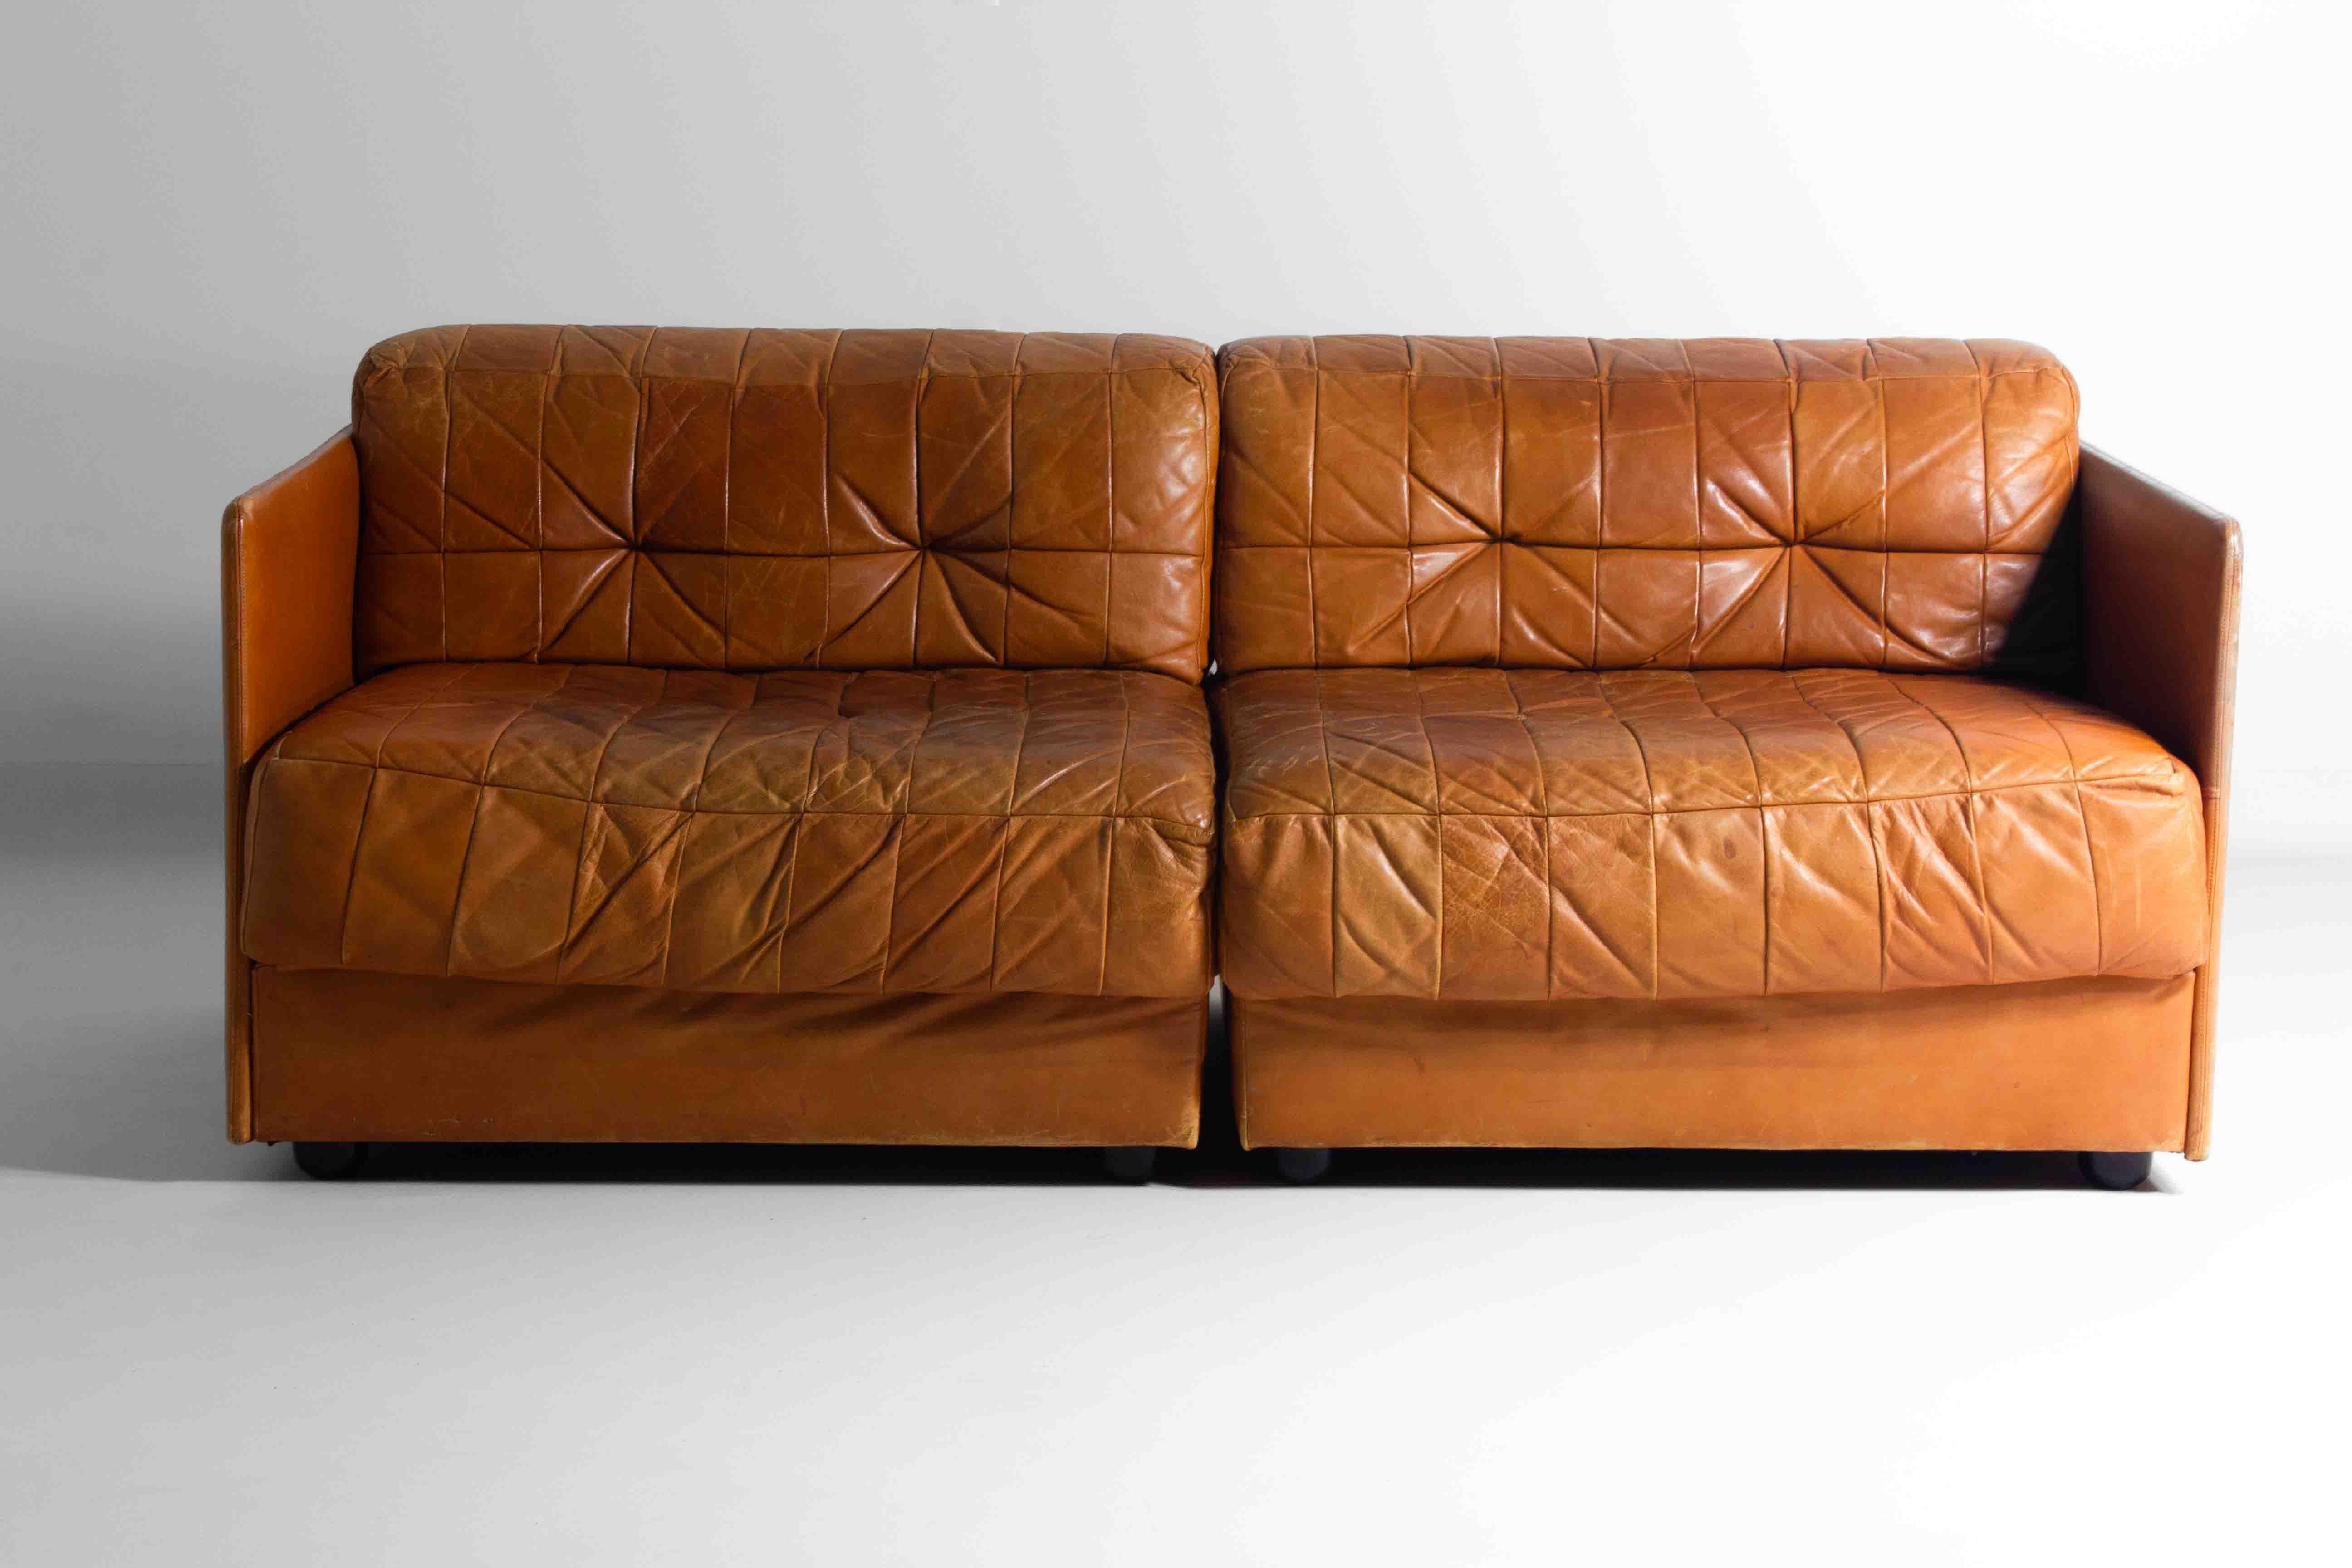 ieses Sofa hat mit seinem Patchwork-Lederdesign einen echten Vintage-Charme. Die karamellbraune Farbe verleiht ihm ein warmes, einladendes Aussehen, und die Art, wie die Flicken zusammengesetzt sind, verleiht ihm einen einzigartigen Charakter. Es